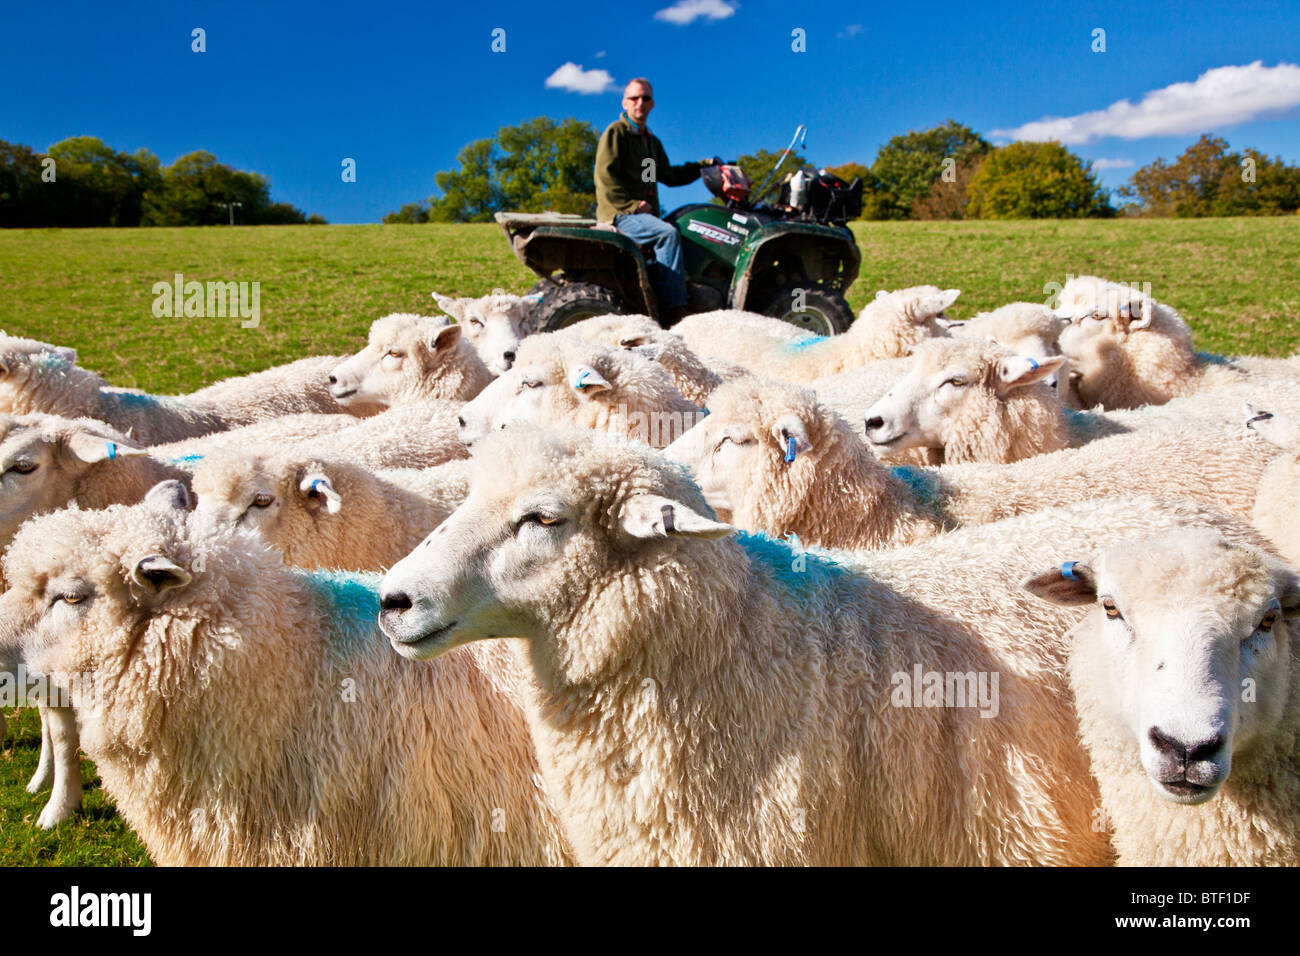 Ein moderner Tag Schäfer auf einem Quad-Bike eine Schafherde Romney in einem Feld zu kontrollieren. Stockfoto